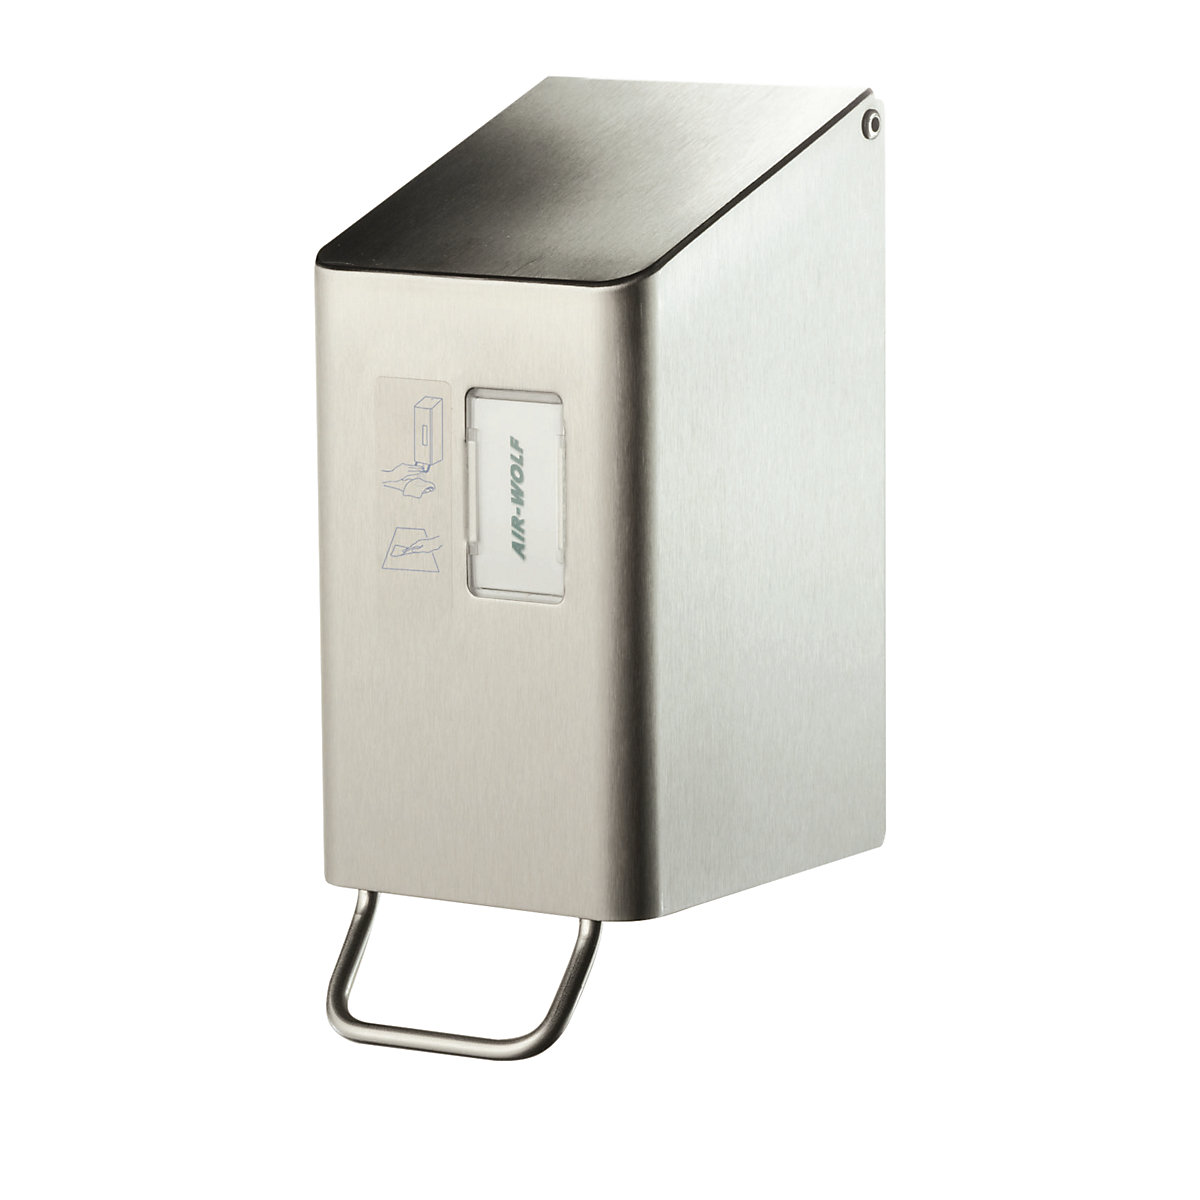 AIR-WOLF – Dispensador de producto de limpieza para el asiento del WC, para 250 ml, acero inoxidable cepillado